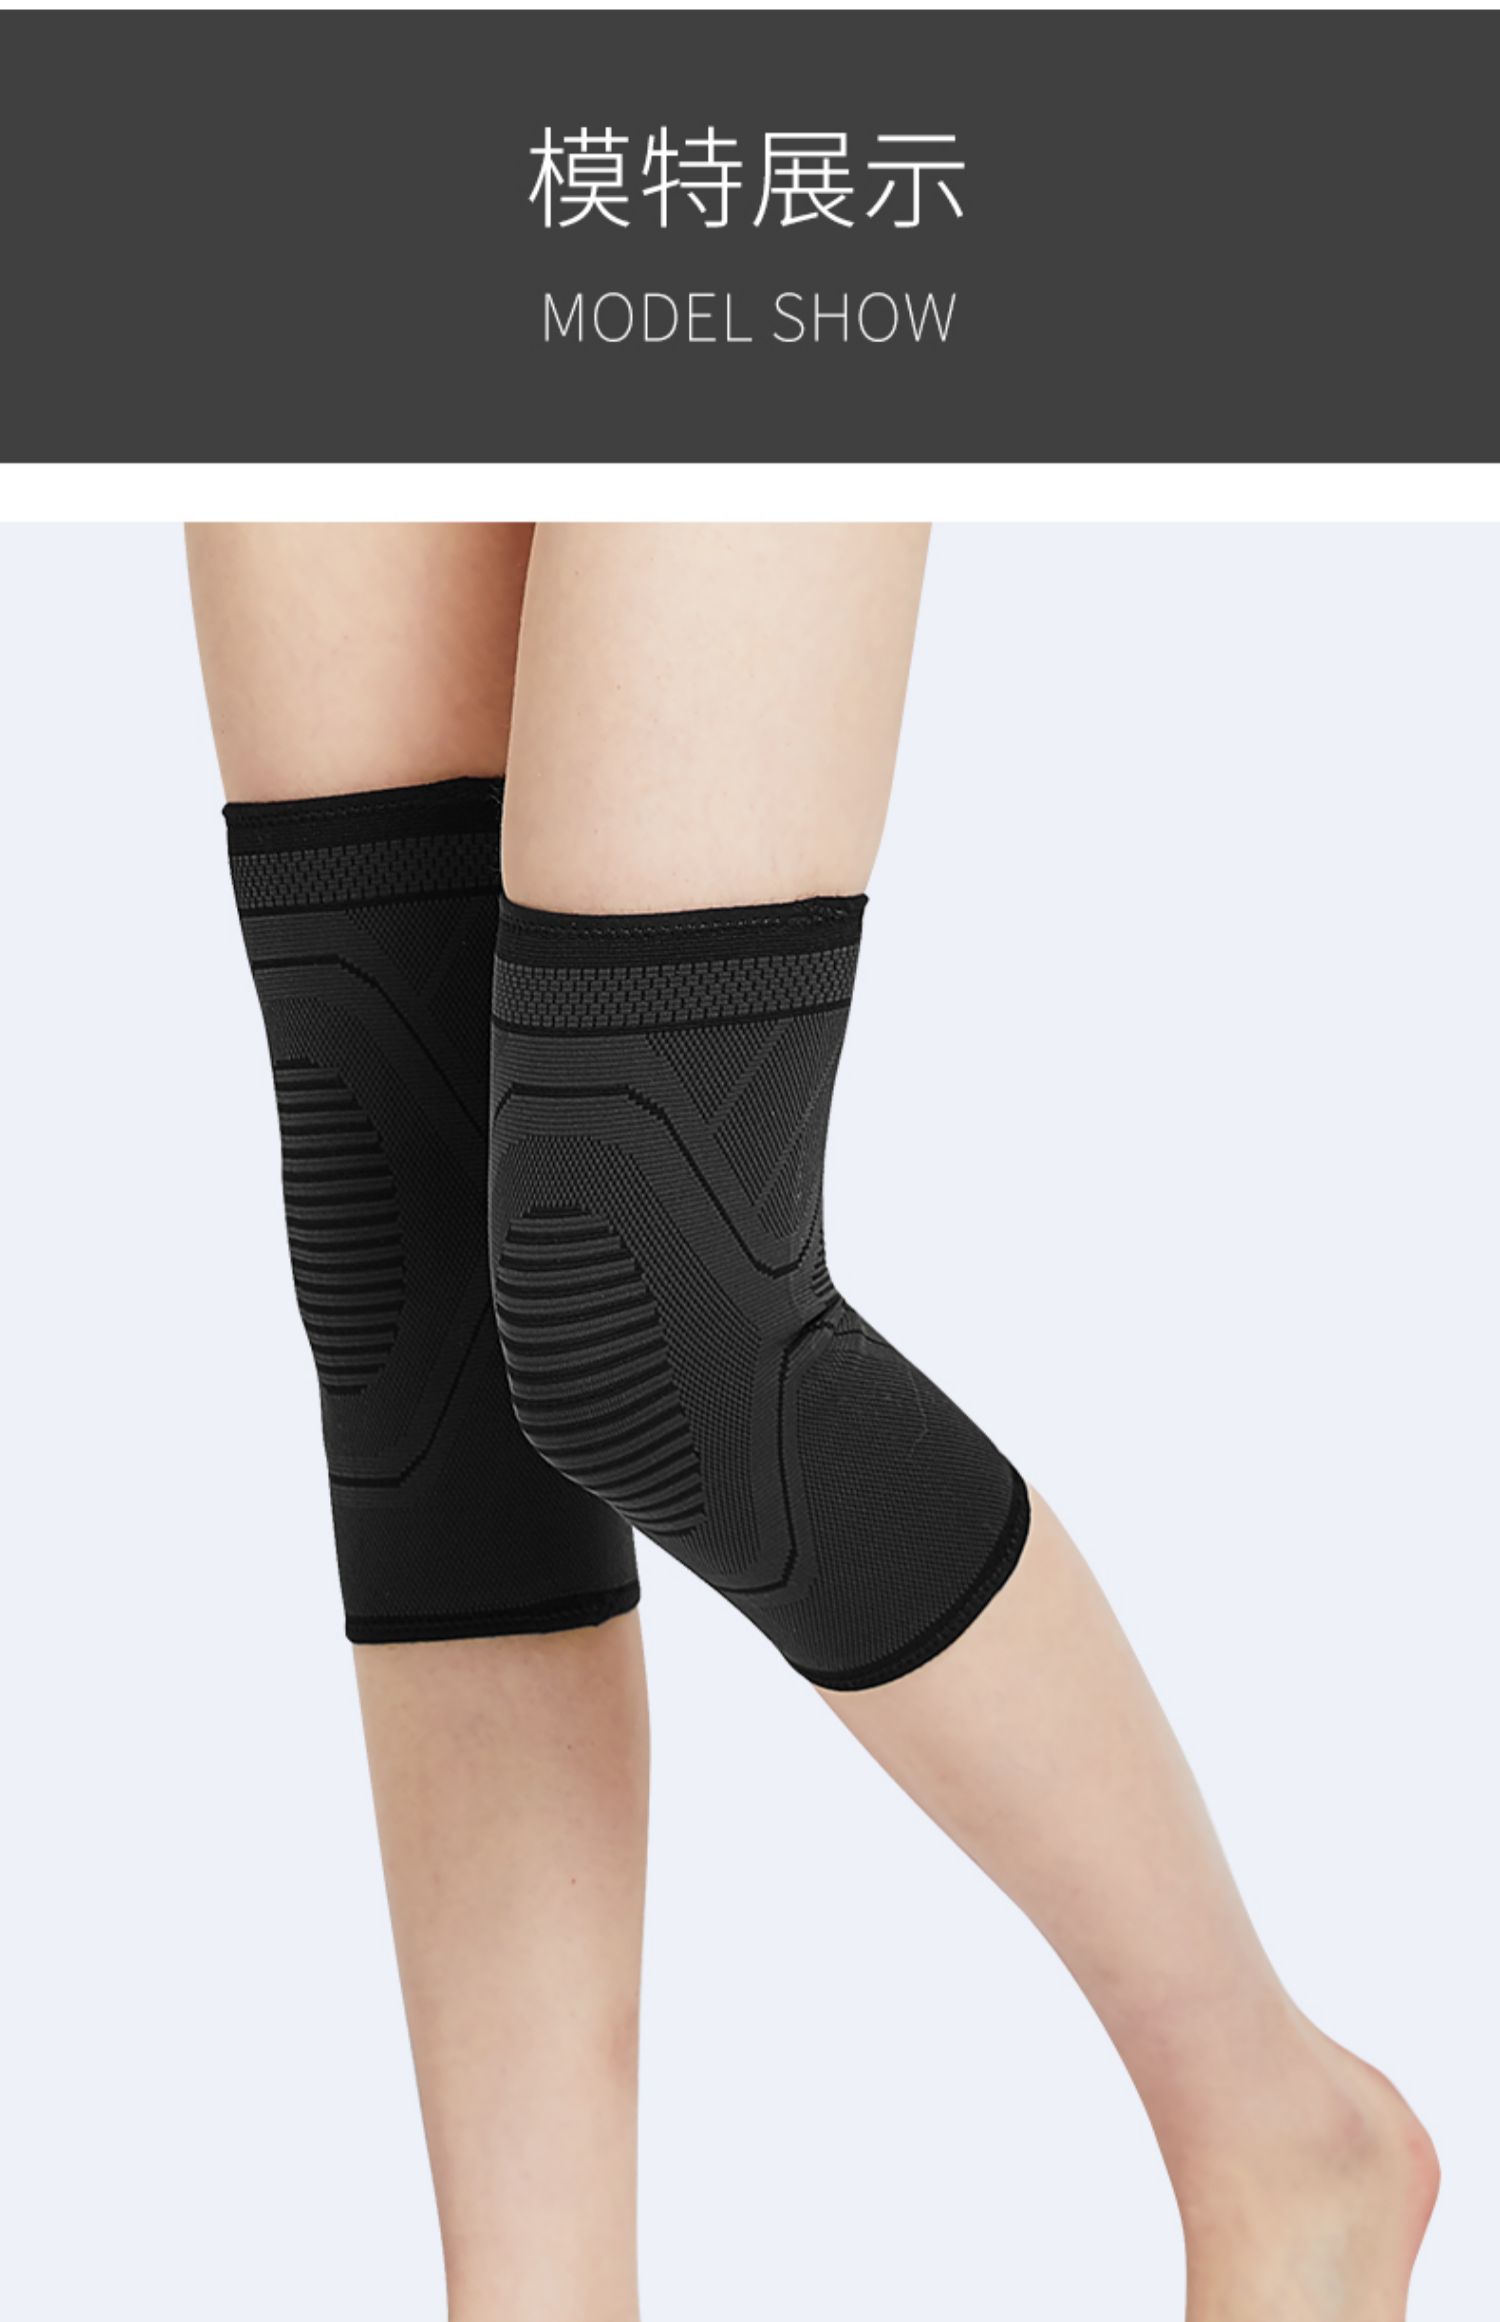 《跑步装备护膝女保护膝盖防寒护滕关节套贴身运动保暖健身薄款装备 